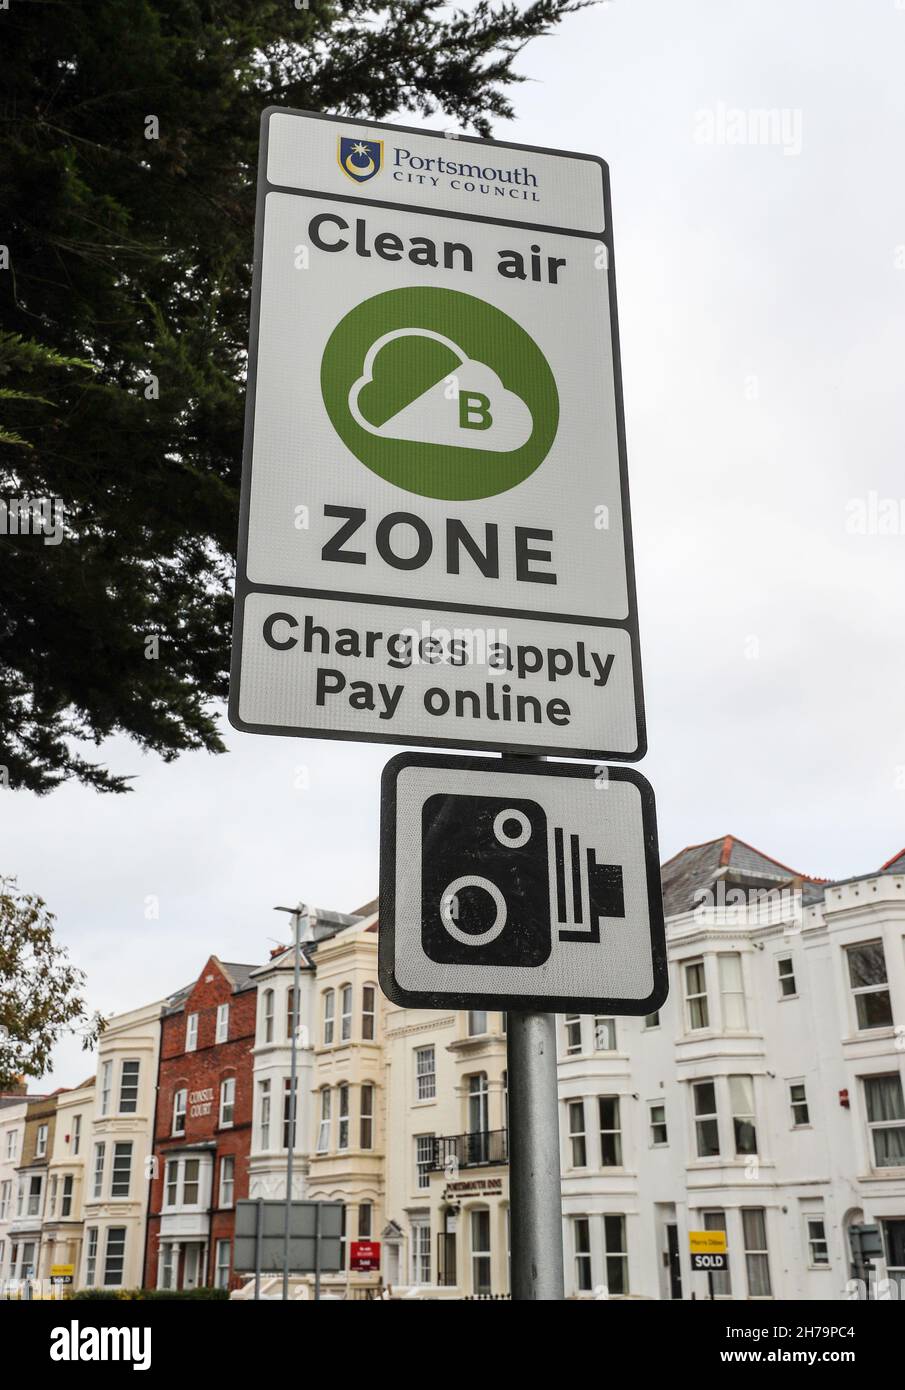 Schild für die saubere Luftverkehrszone von Portsmouth. Die Stadtverwaltung von Portsmouth hat am 29th. November 2021 die Reinluftzone eingeführt. Stockfoto